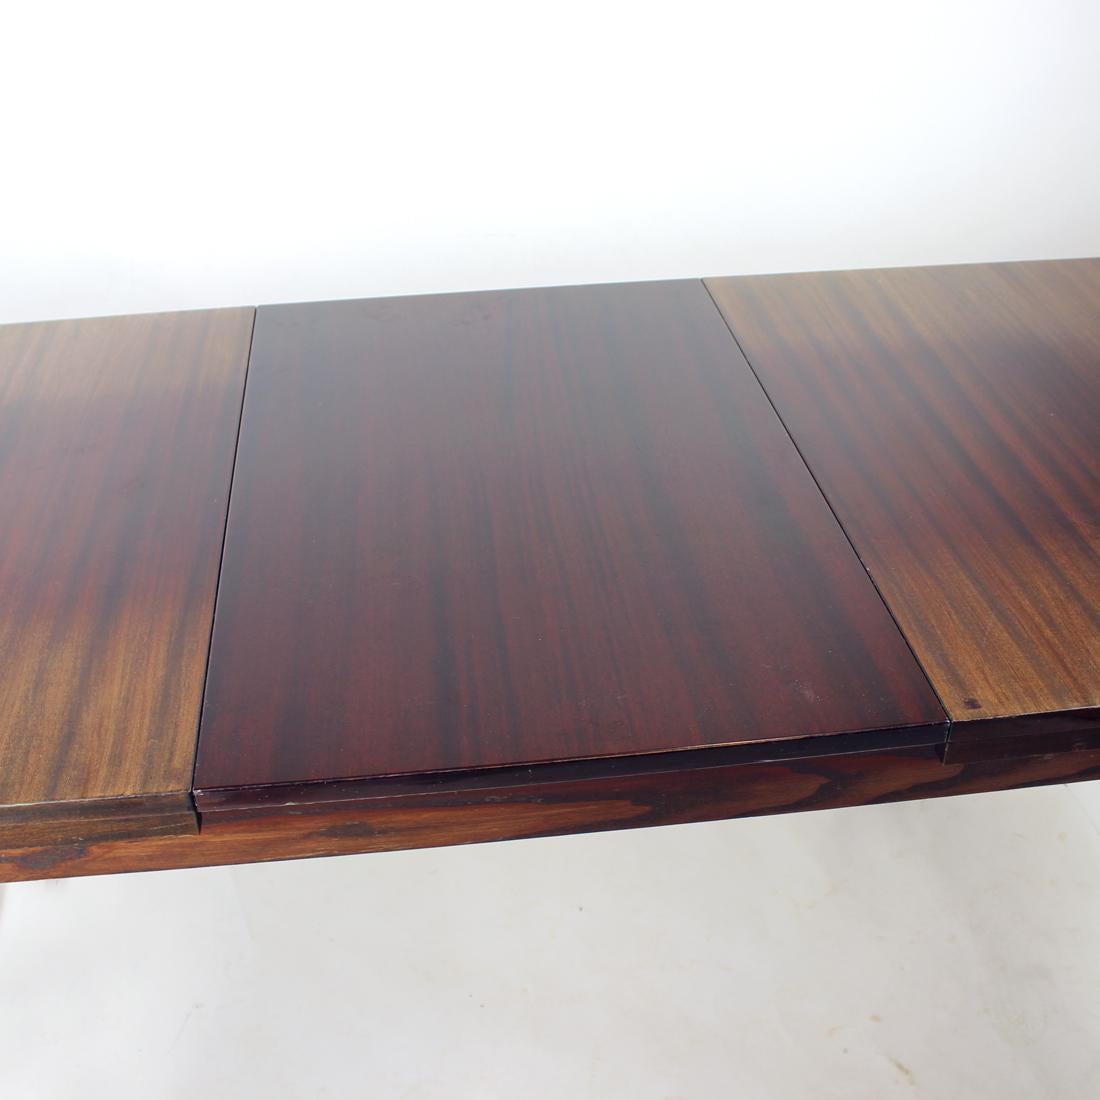 Magnifique table du milieu du siècle produite dans les années 1960 par la société Jitona. Les labels d'origine sont encore attachés au bas des planches supérieures. La table est fabriquée en bois de chêne avec placage d'acajou sur le plateau